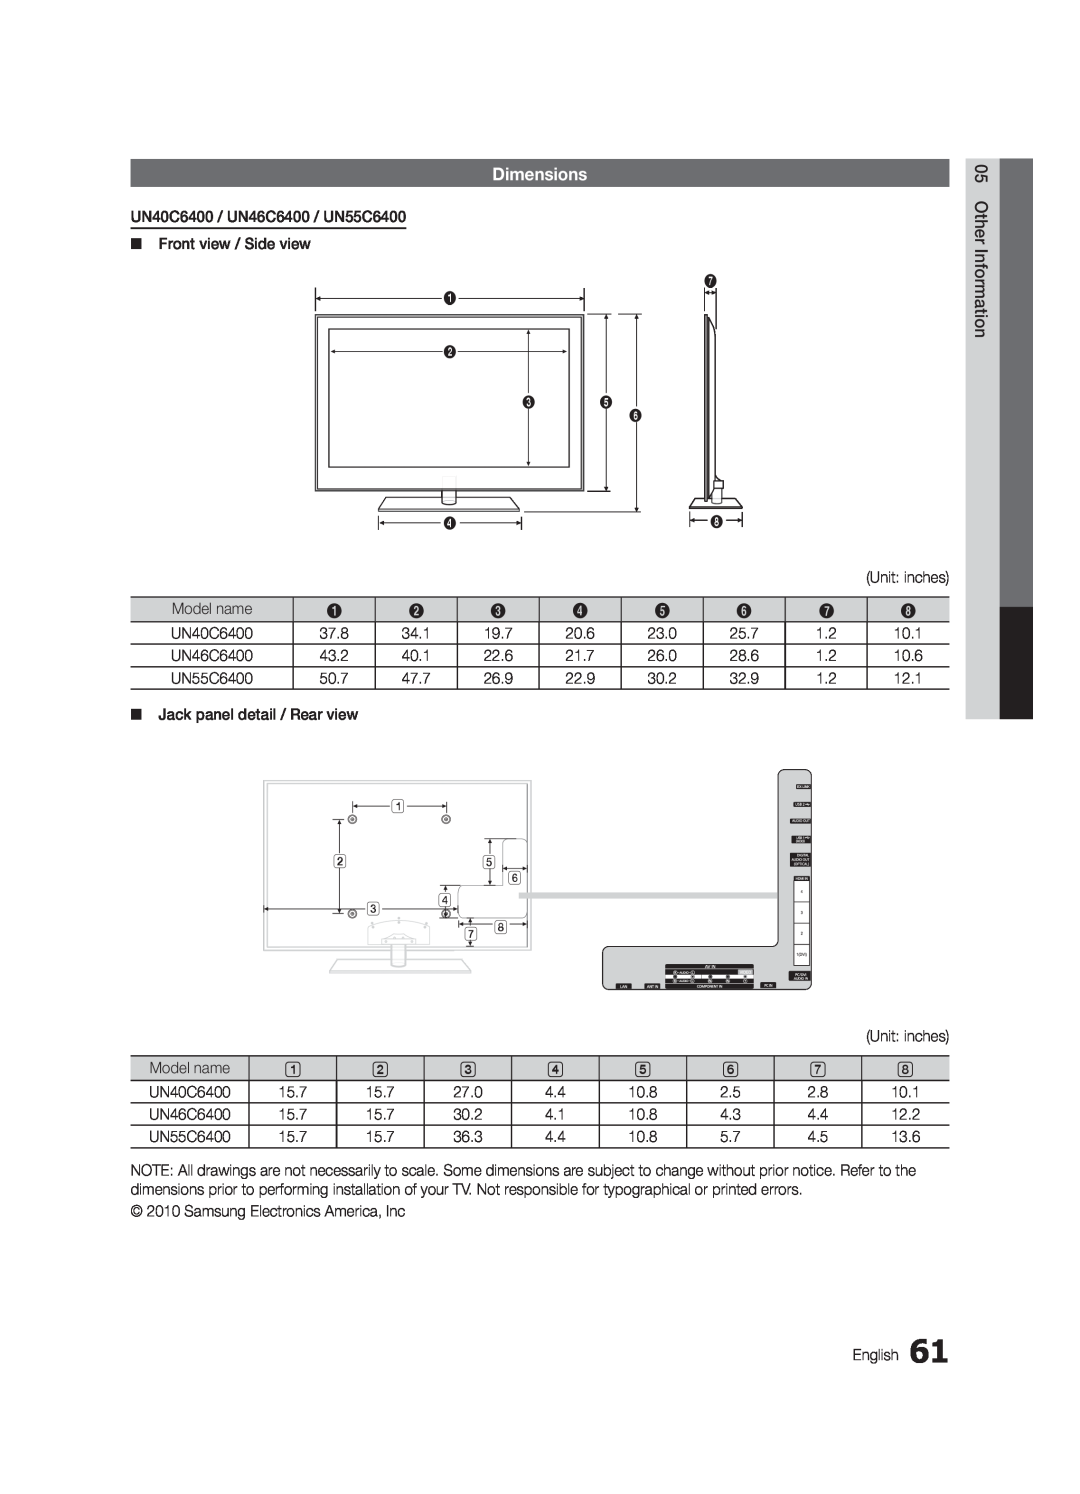 Samsung UN55C6400, UN46C6400, UN40C6500 user manual Dimensions 